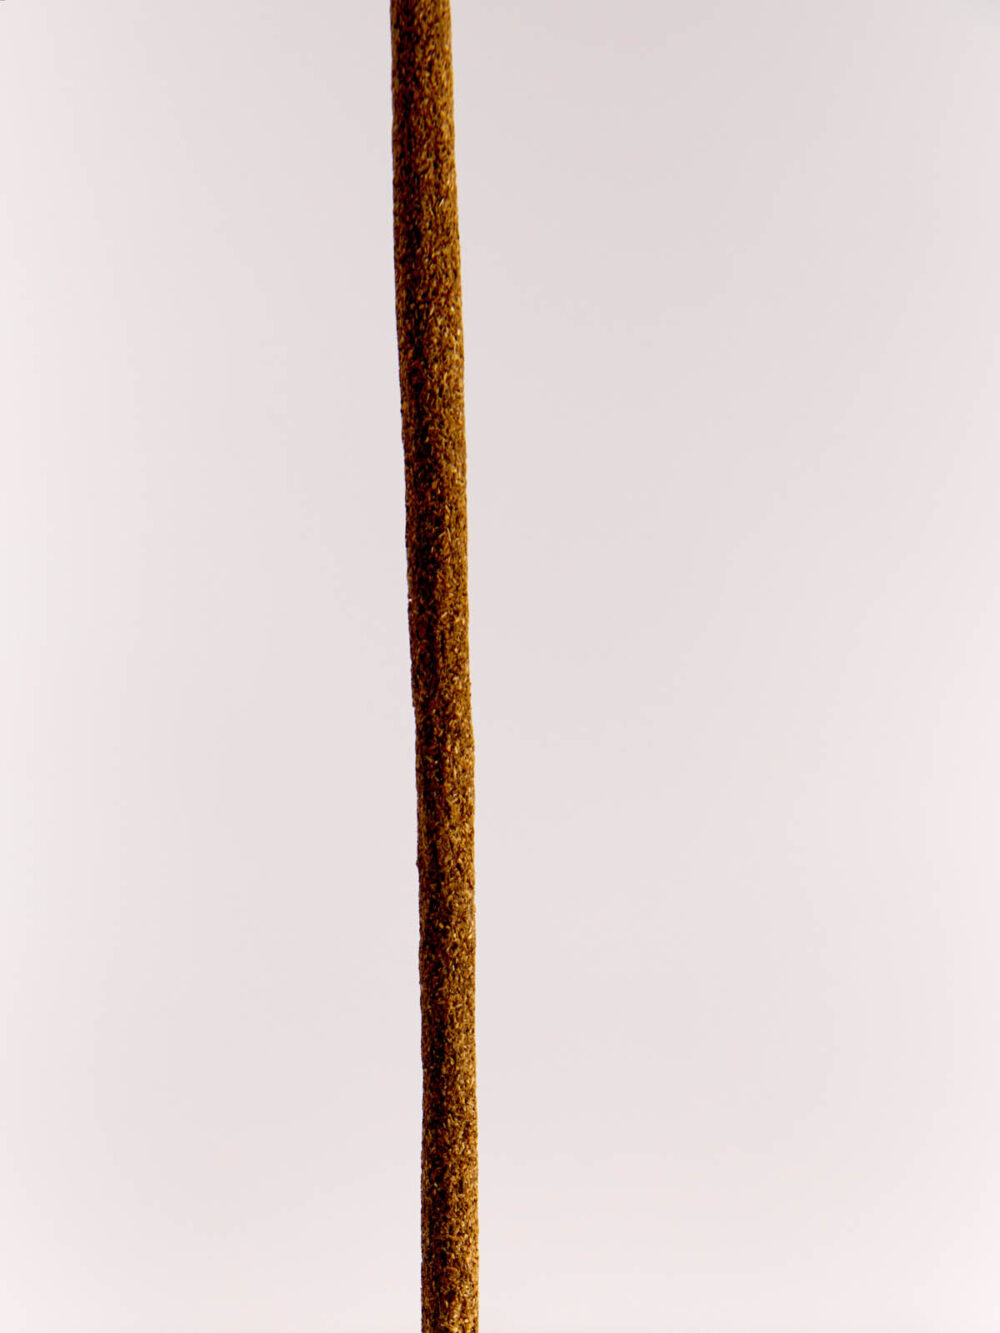 Hand Rolled Lavender Flower Incense Sticks by Cedar & Myrrh incense stick